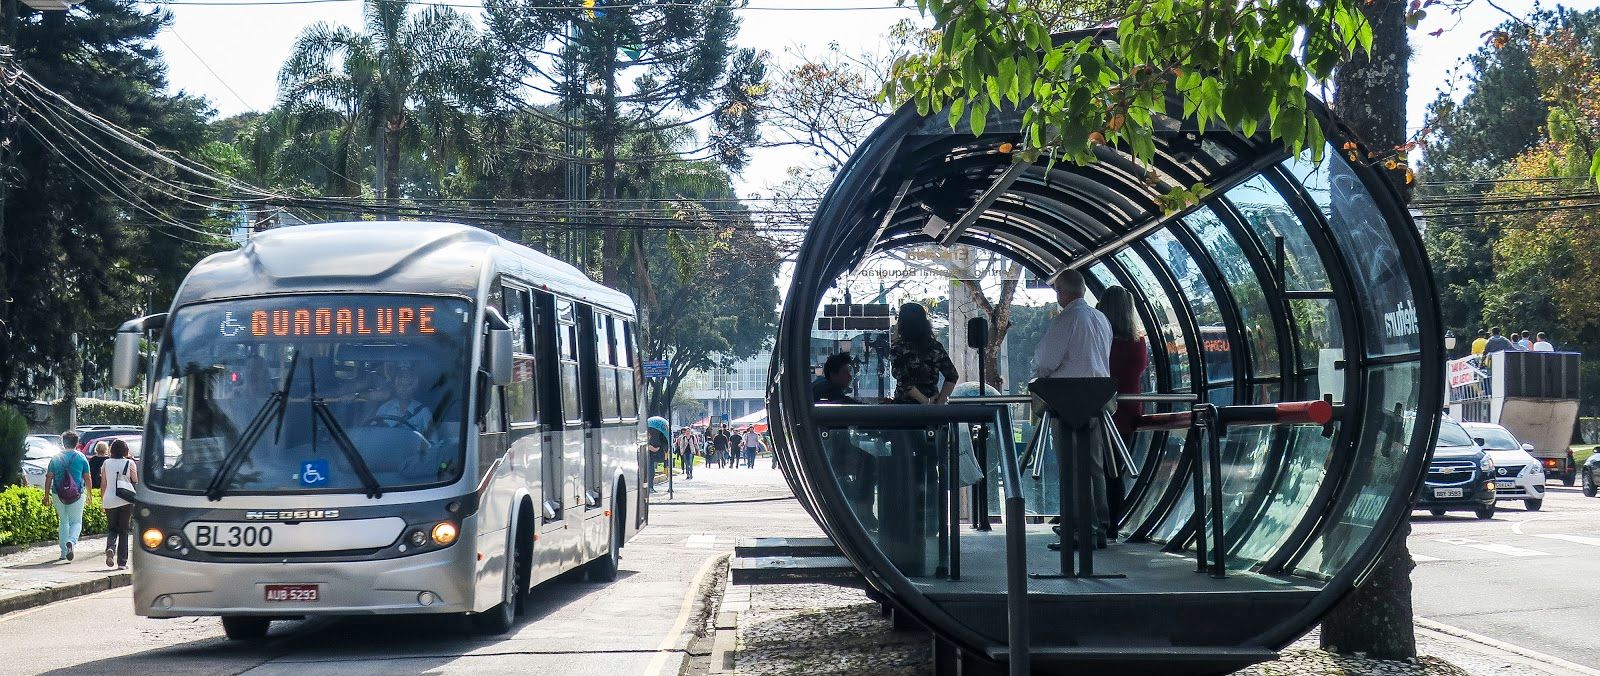 Viver em Curitiba: organização urbana